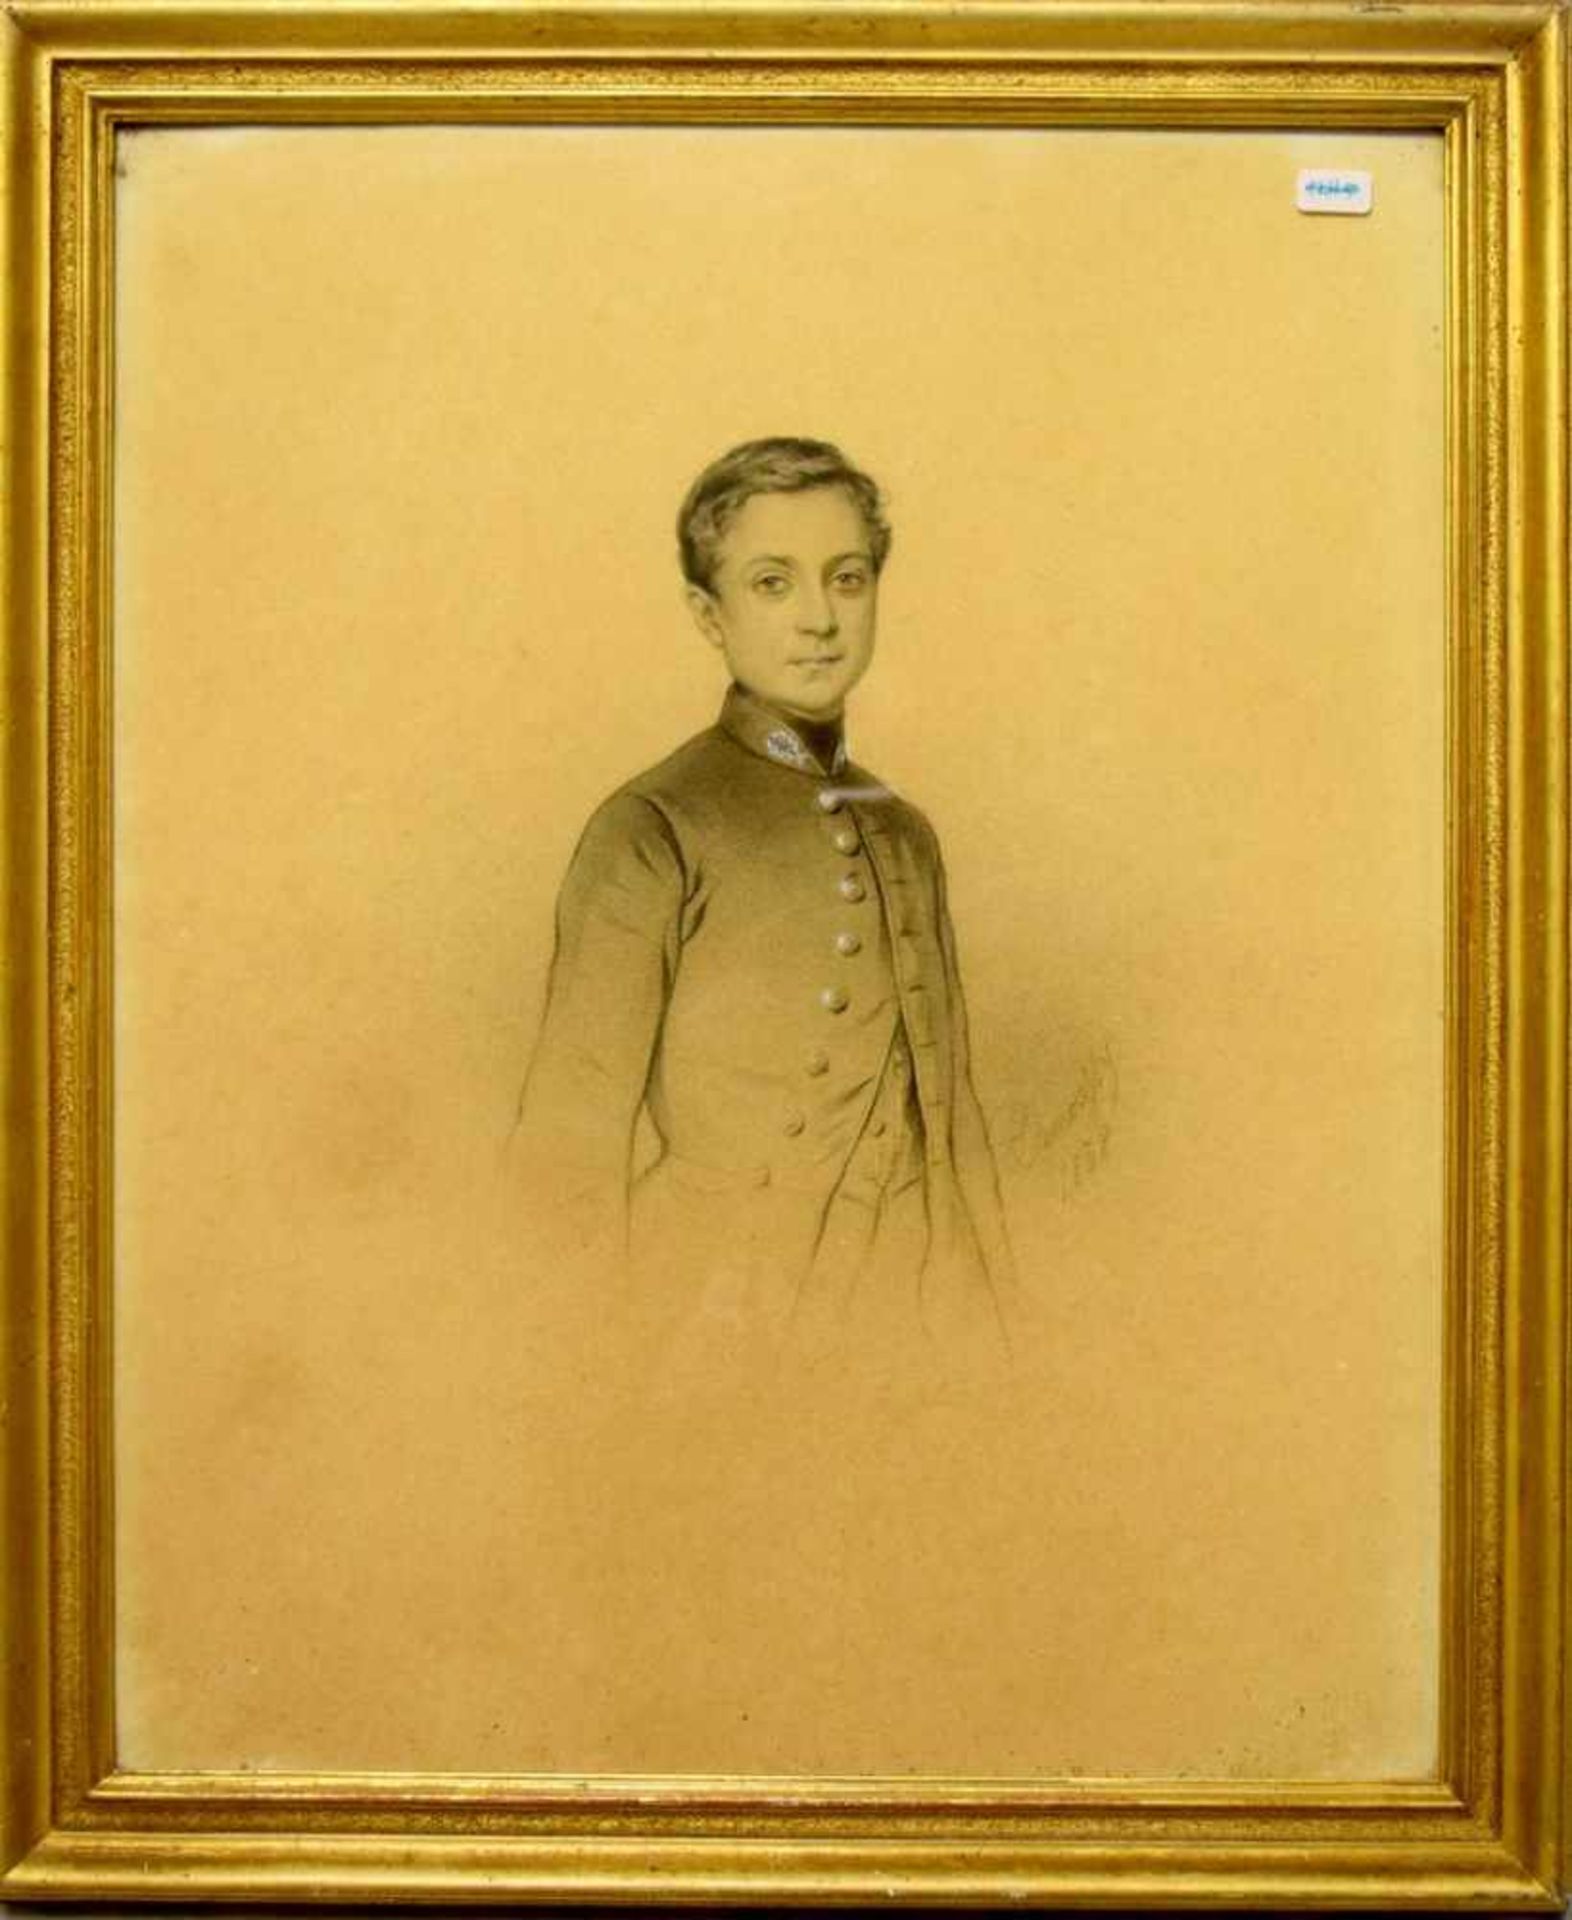 BleistiftzeichnungHalbportrait eines jungen Mannes in Uniform mit verziertem Kragen, mit Namenszug